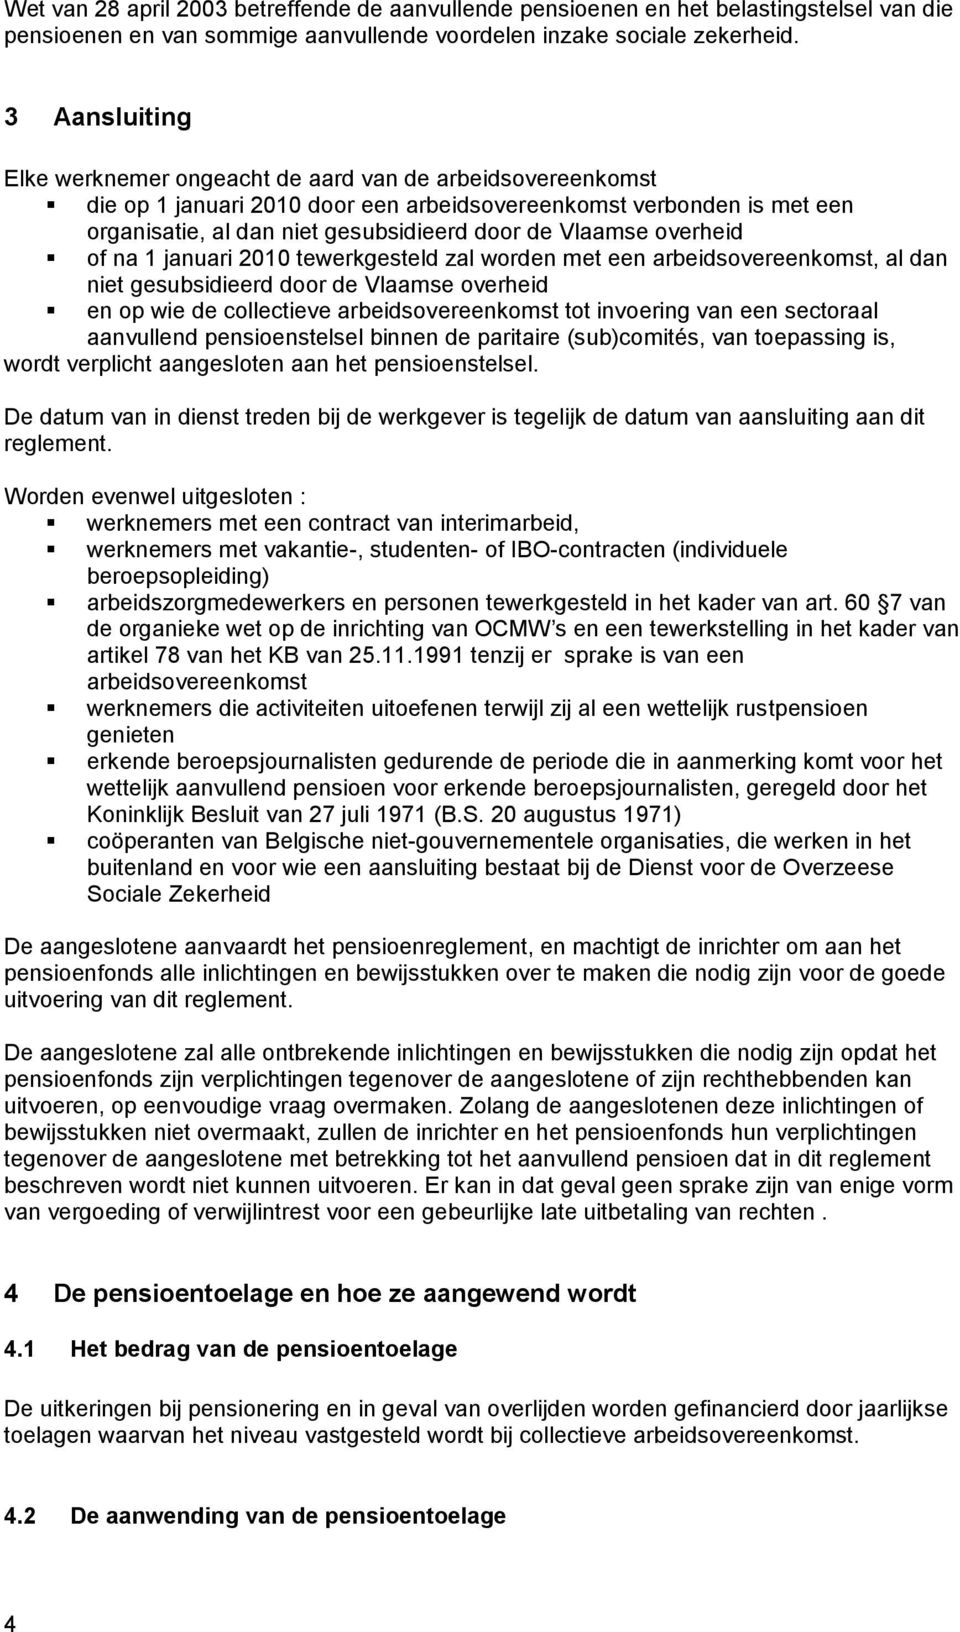 overheid of na 1 januari 2010 tewerkgesteld zal worden met een arbeidsovereenkomst, al dan niet gesubsidieerd door de Vlaamse overheid en op wie de collectieve arbeidsovereenkomst tot invoering van